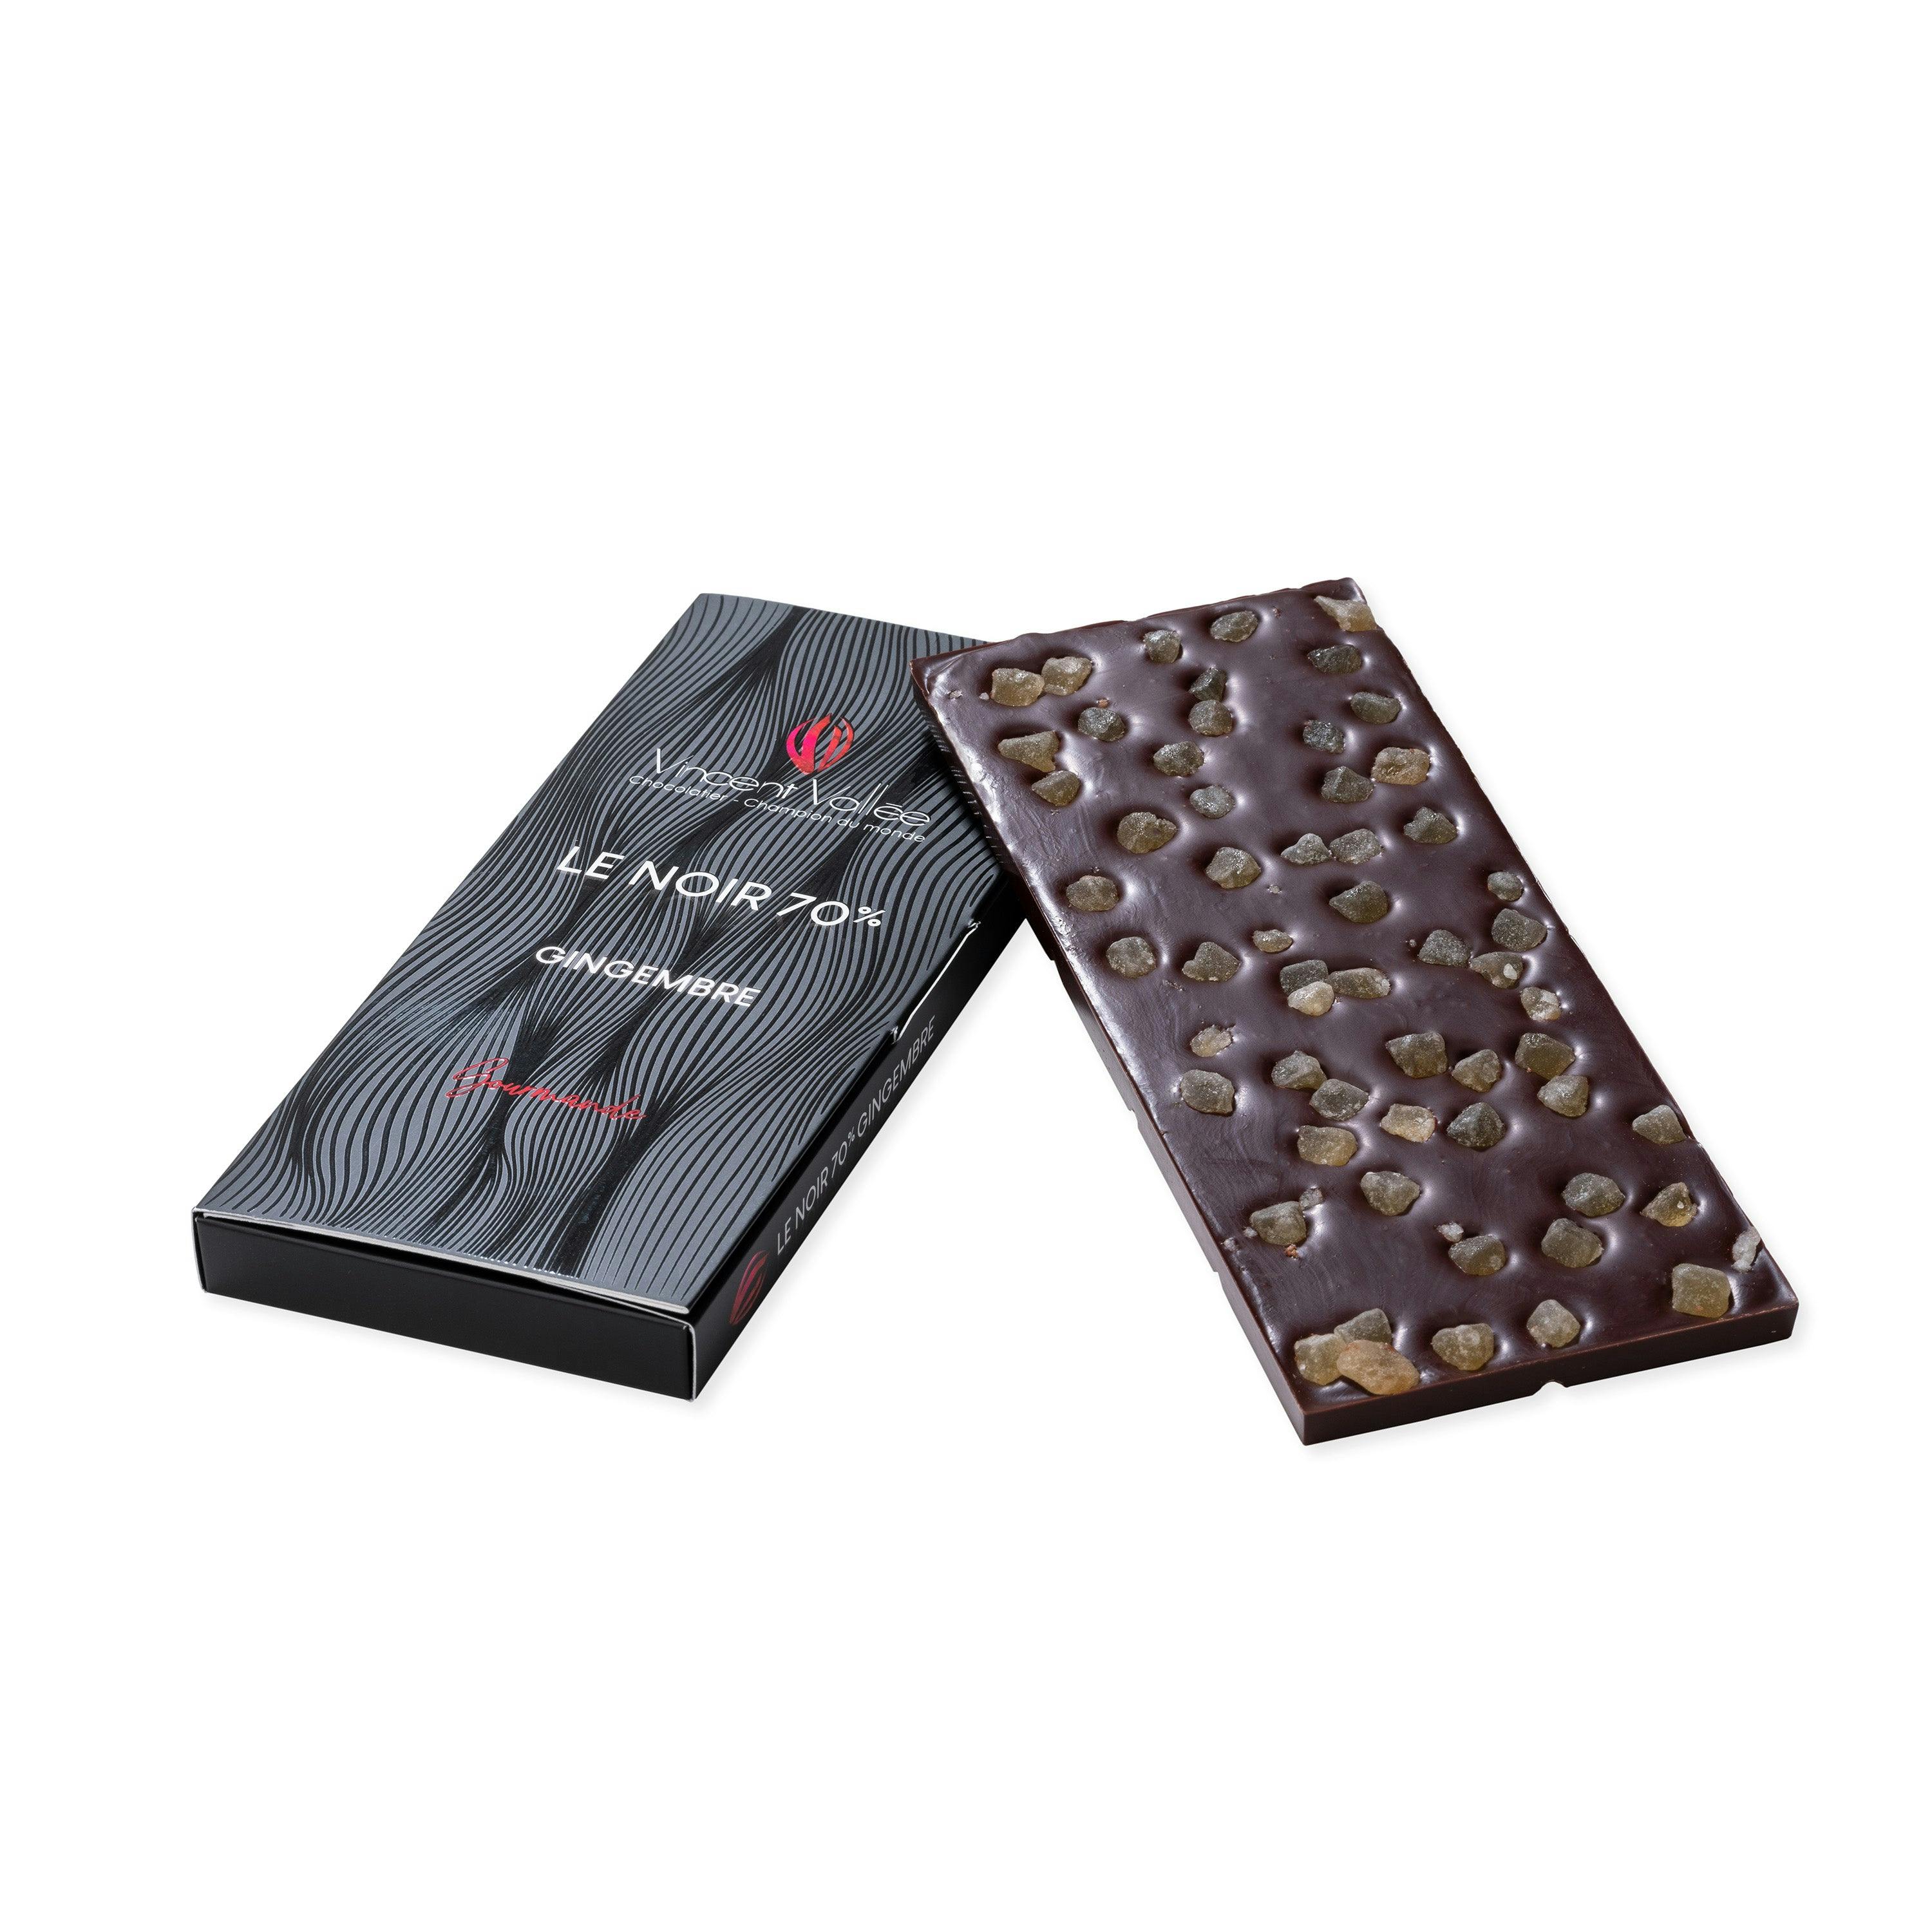 Noir Gingembre - Vincent Vallée chocolatier champion du monde